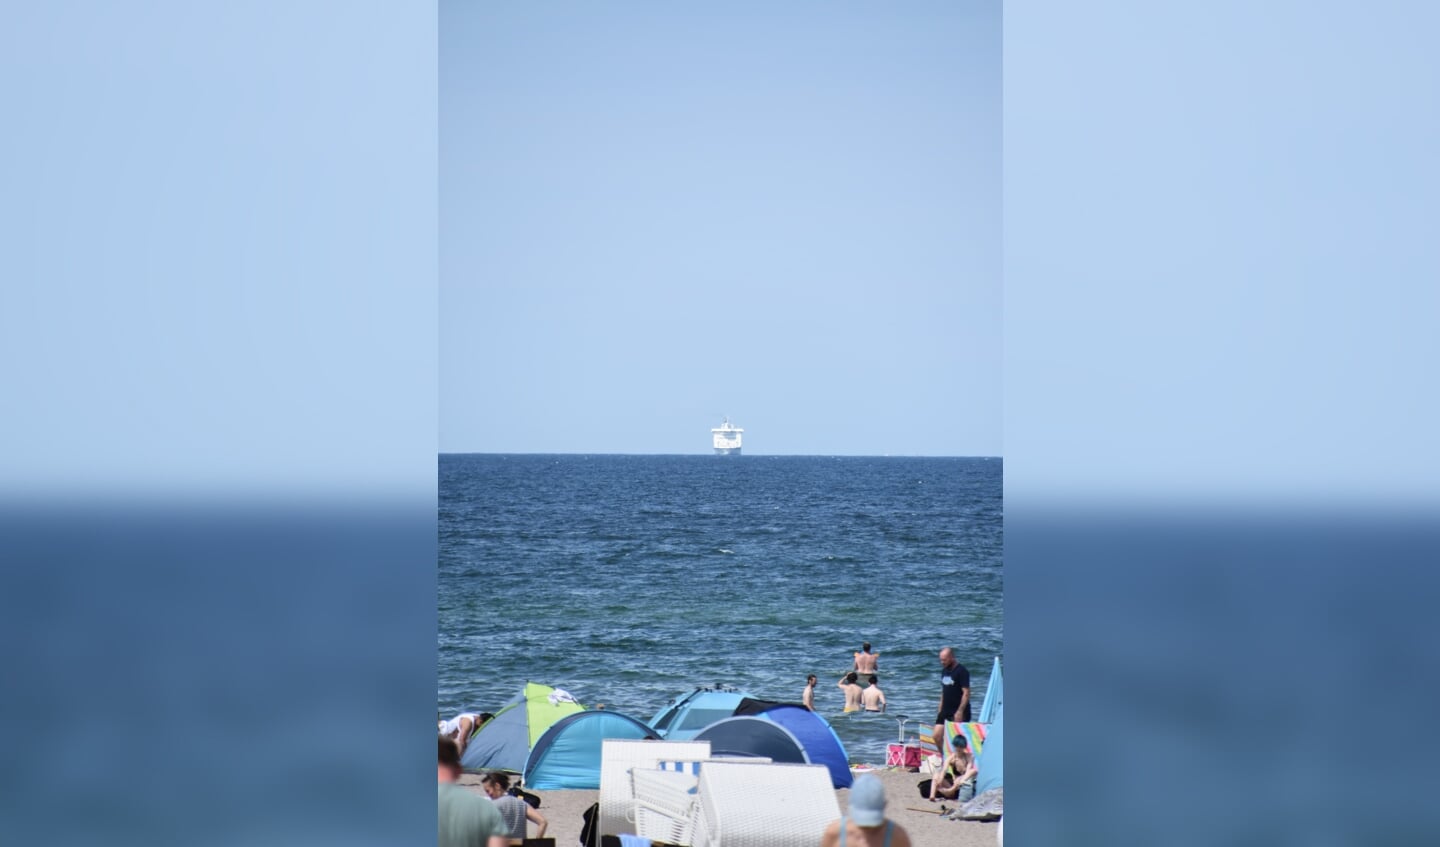 ,,In Warnemünde, aan de Noord Duitse kust, troffen wij begin augustus een spannend tafereel.

Bedrijvigheid op het strand, mensen zoeken beschutting en verkoeling, terwijl een veerboot recht op de kust afkoerst.